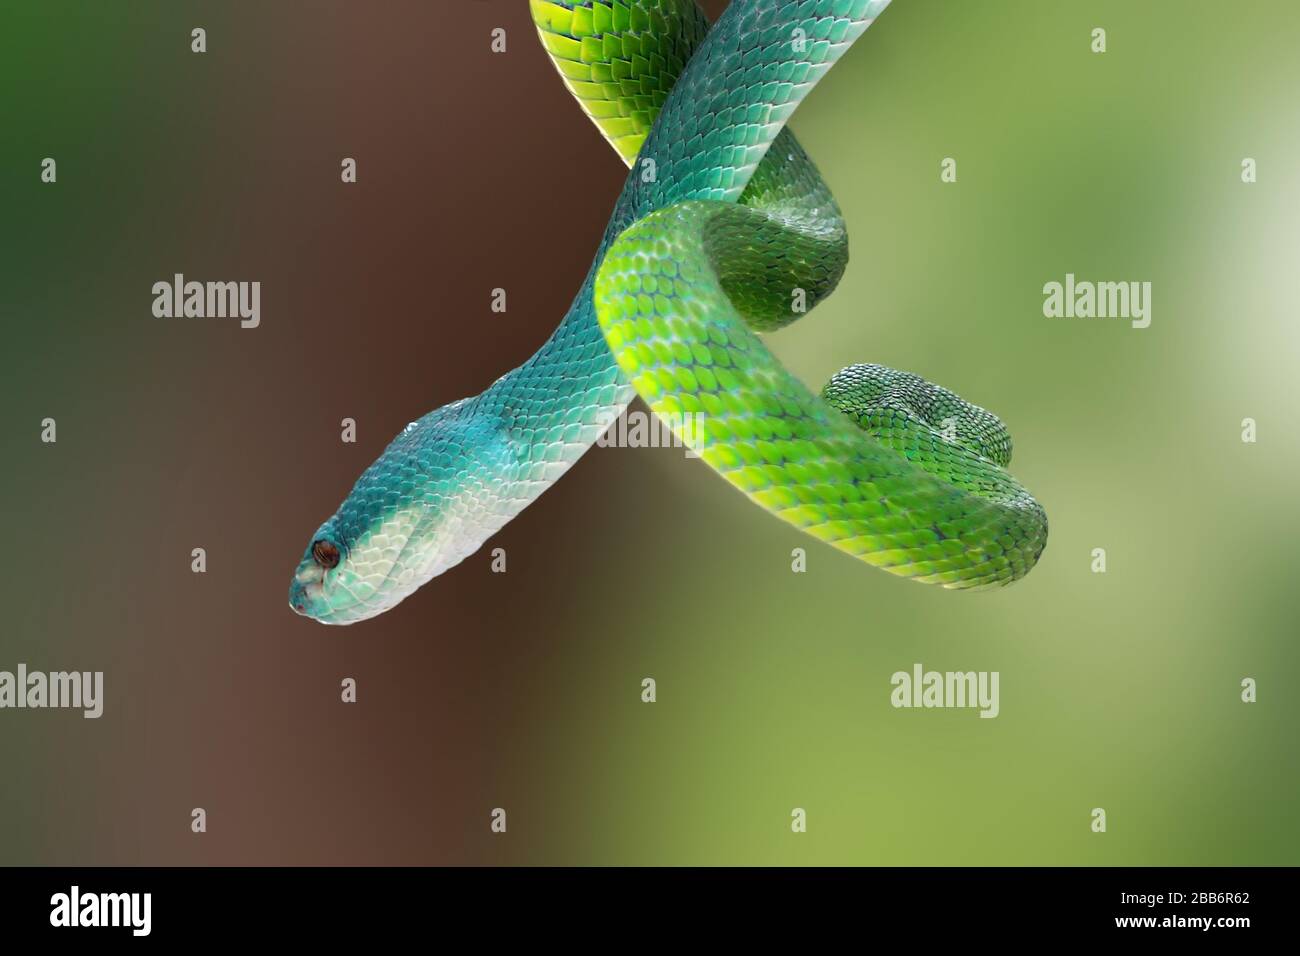 Serpent indonésien à viper bleu et serpent vert à vipère blanc incrustés sur une branche, Indonésie Banque D'Images